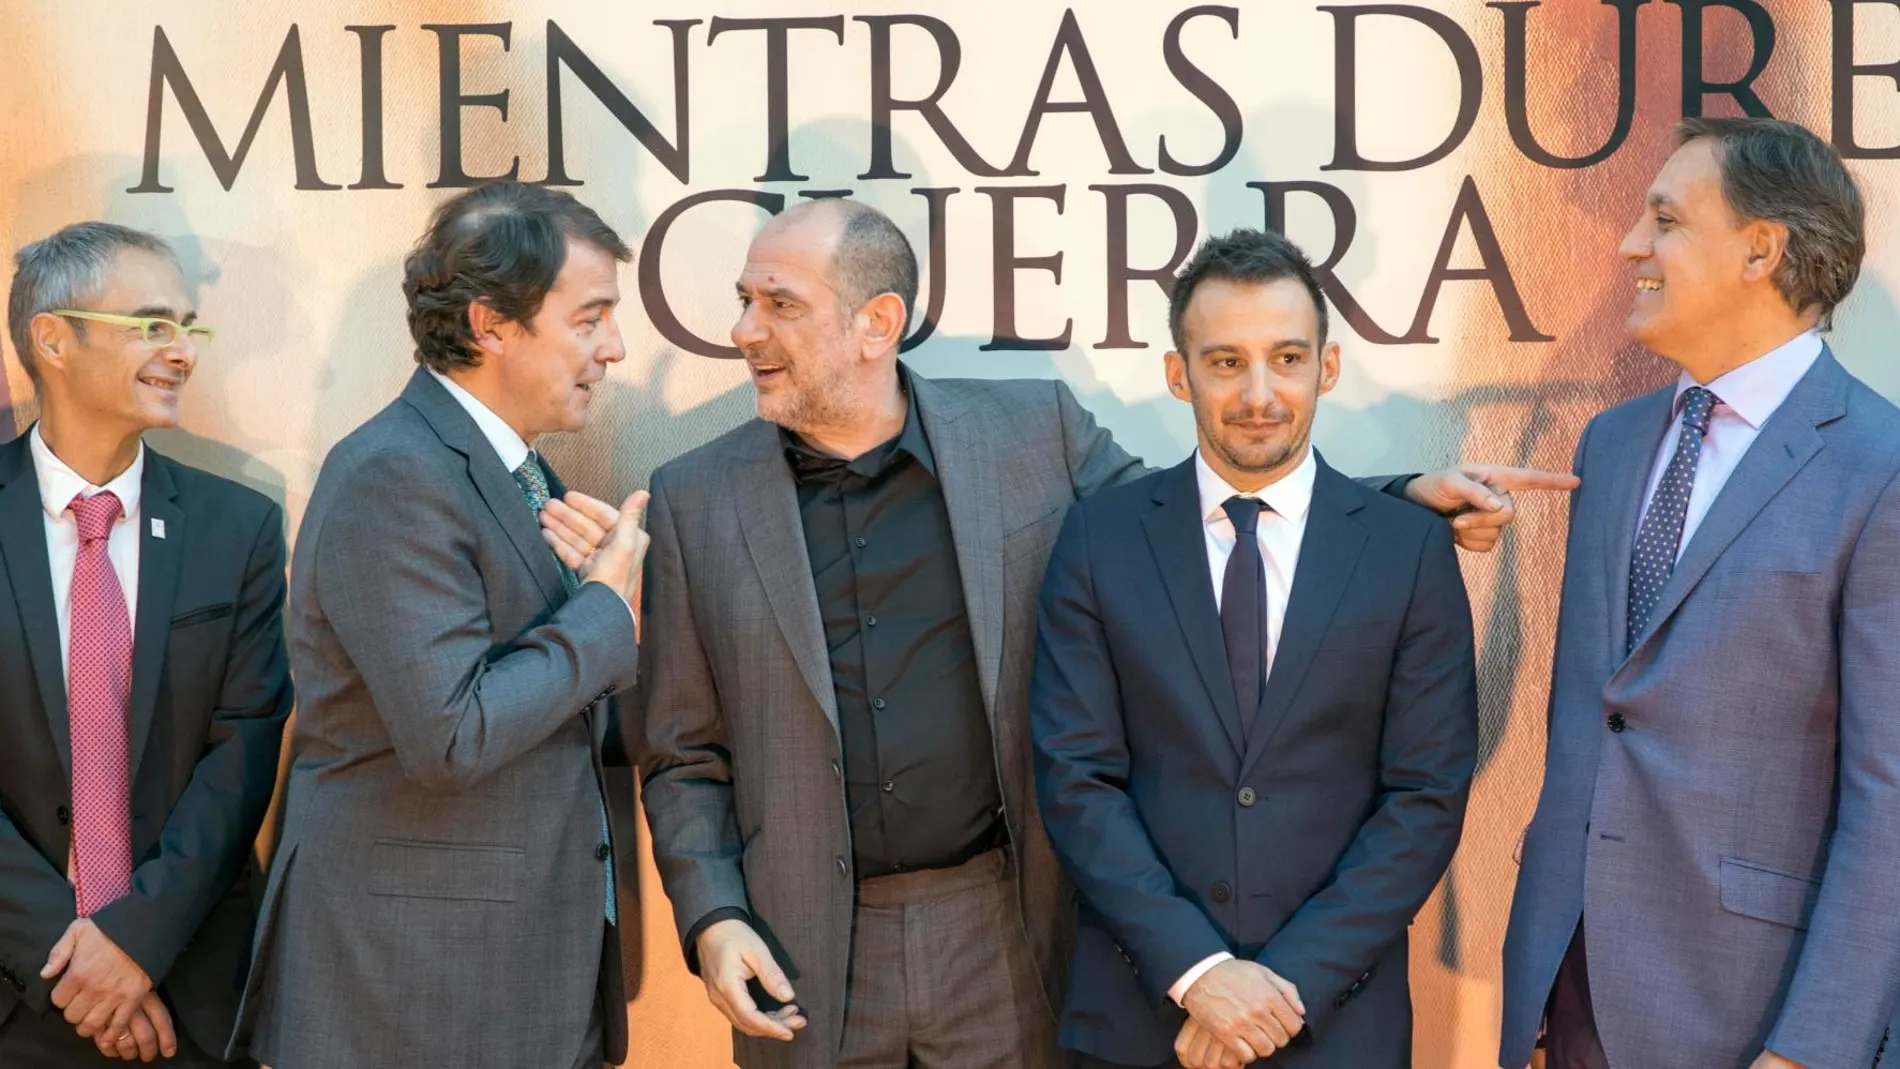 El presidente de la Junta, Alfonso Fernández Mañueco, conversa con el actor Karra Elejalde en presencia de Amenábar, Ricardo Rivero y García Carbayo